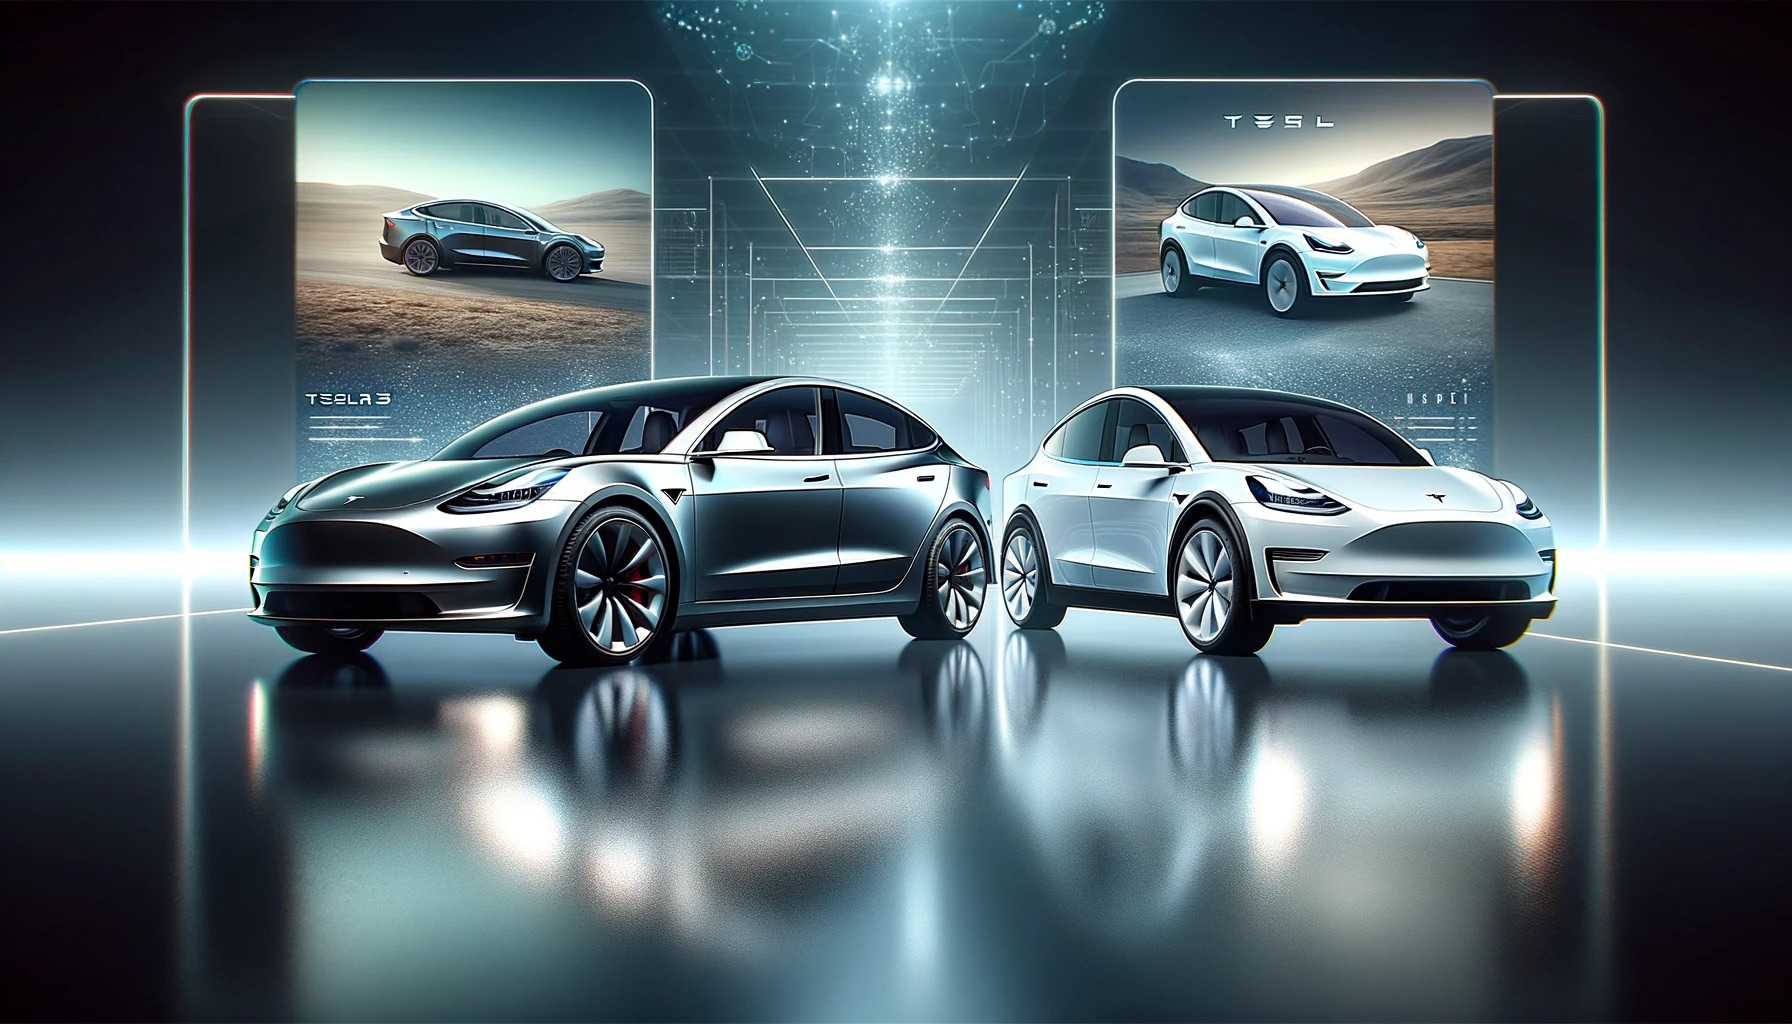 Essai et vraies mesures de la Tesla Model 3 Grande Autonomie